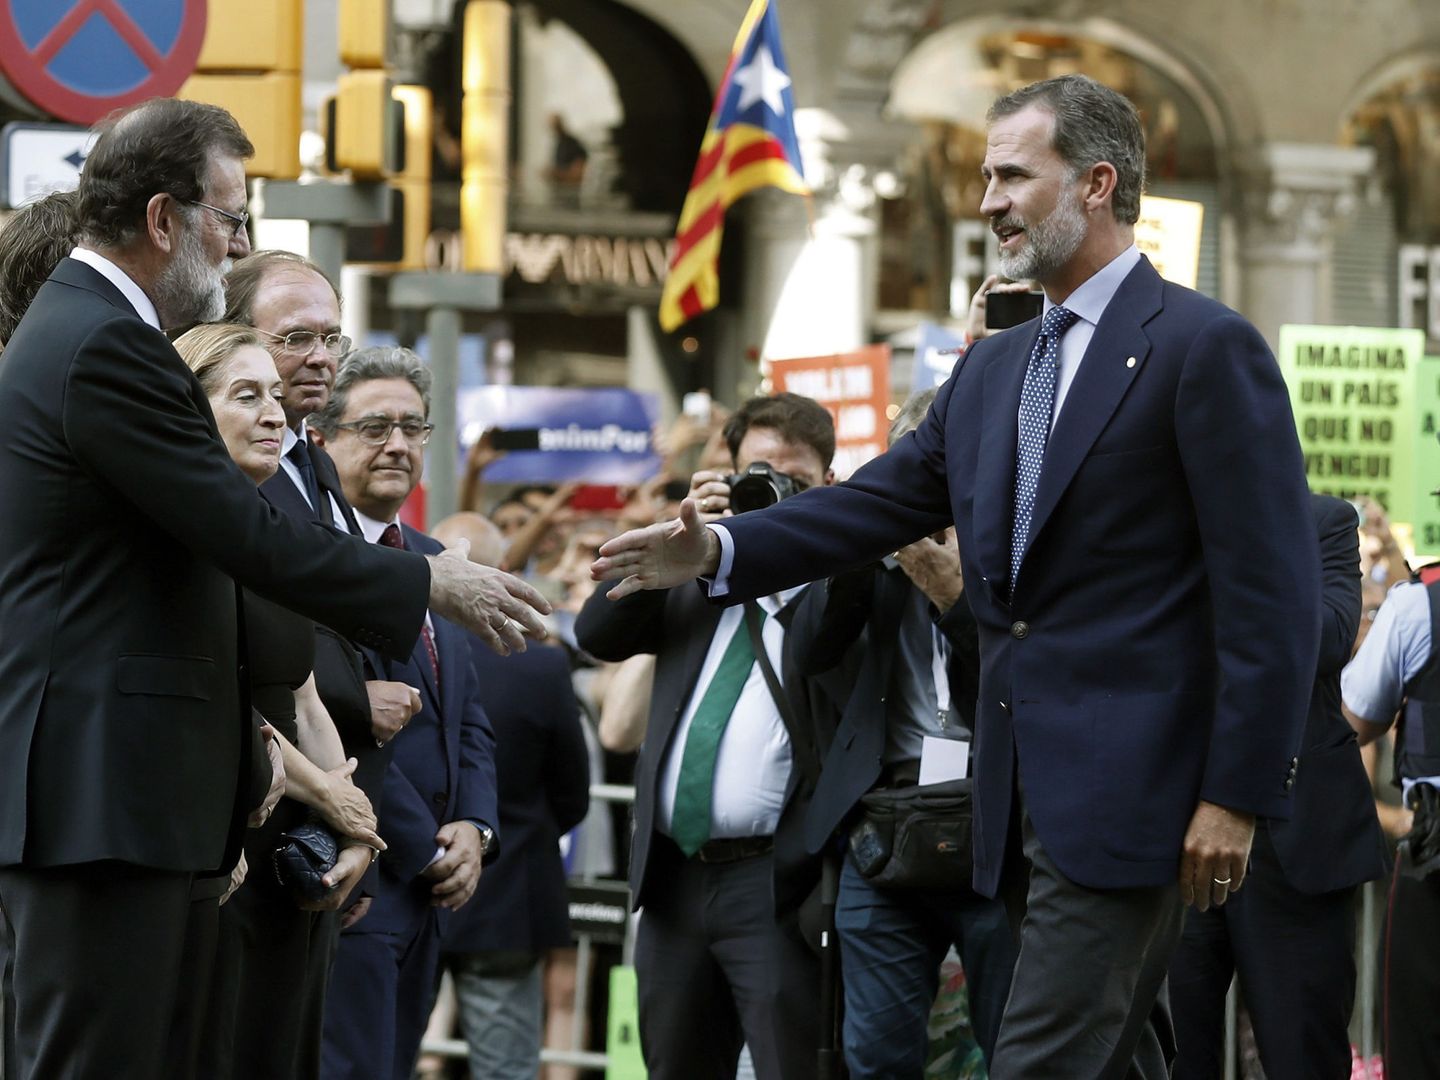 El rey Felipe VI saluda a Mariano Rajoy durante la manifestación contra los atentados yihadistas en Cataluña, con independentistas de fondo. (EFE/Andreu Dalmau)